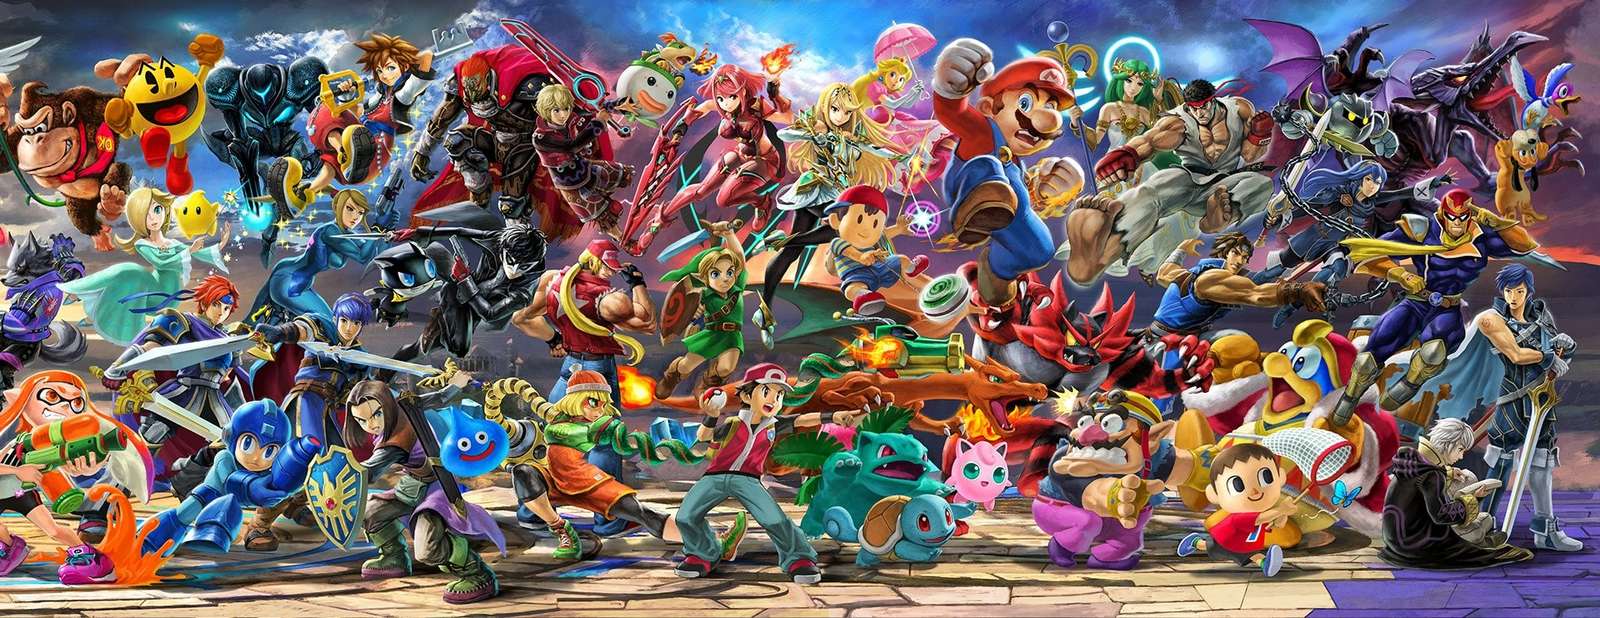 Nástěnná malba Super Smash Bros Ultimate, správně skládačky online